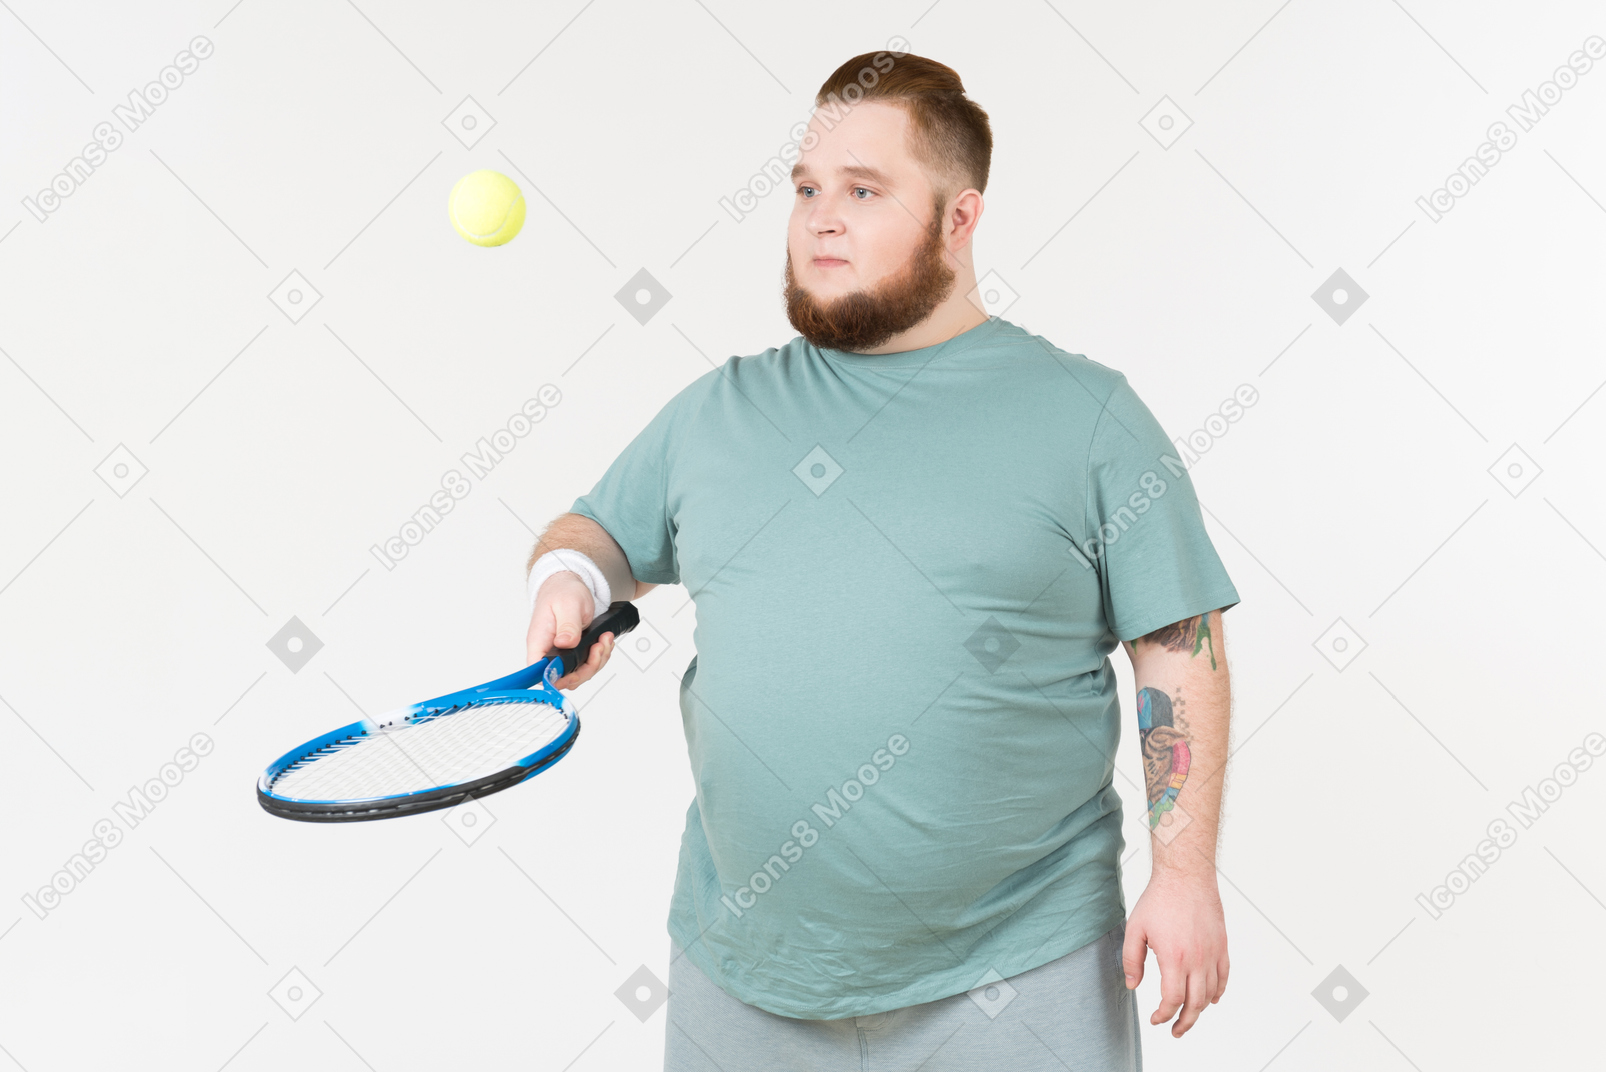 Cara grande no sportswear, escolhendo a bola de tênis com raquete de tênis